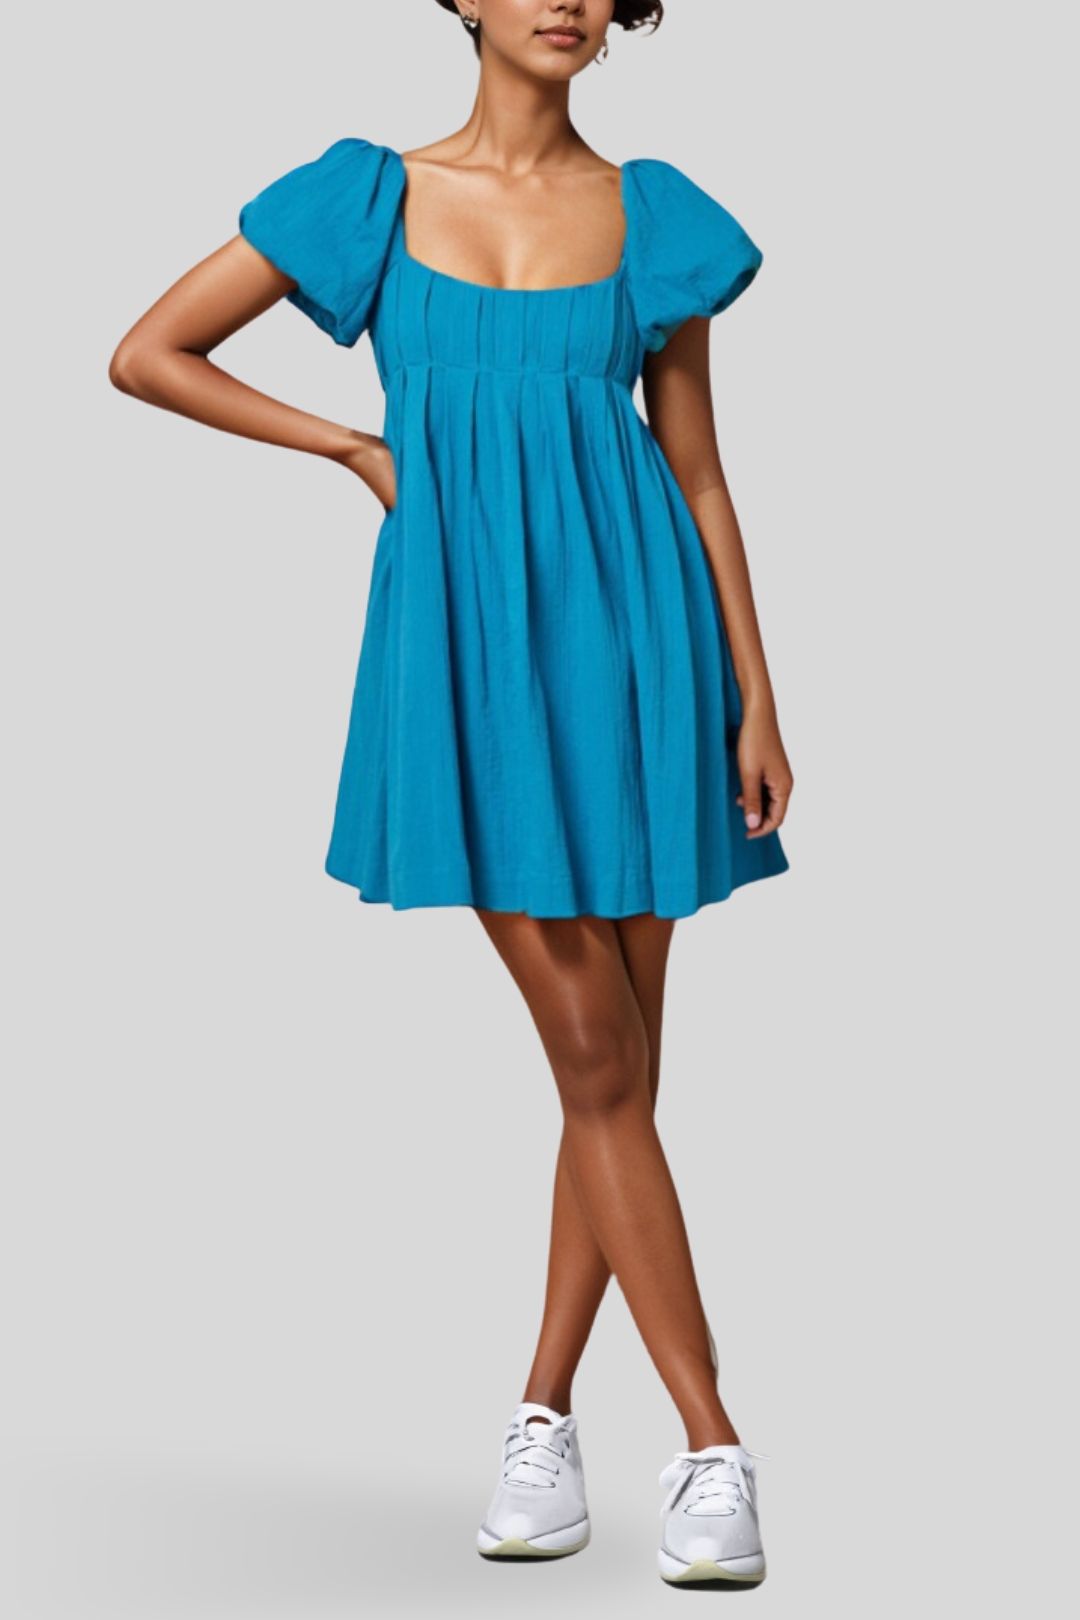 AERE Organic Crinkle Mini Dress Blue